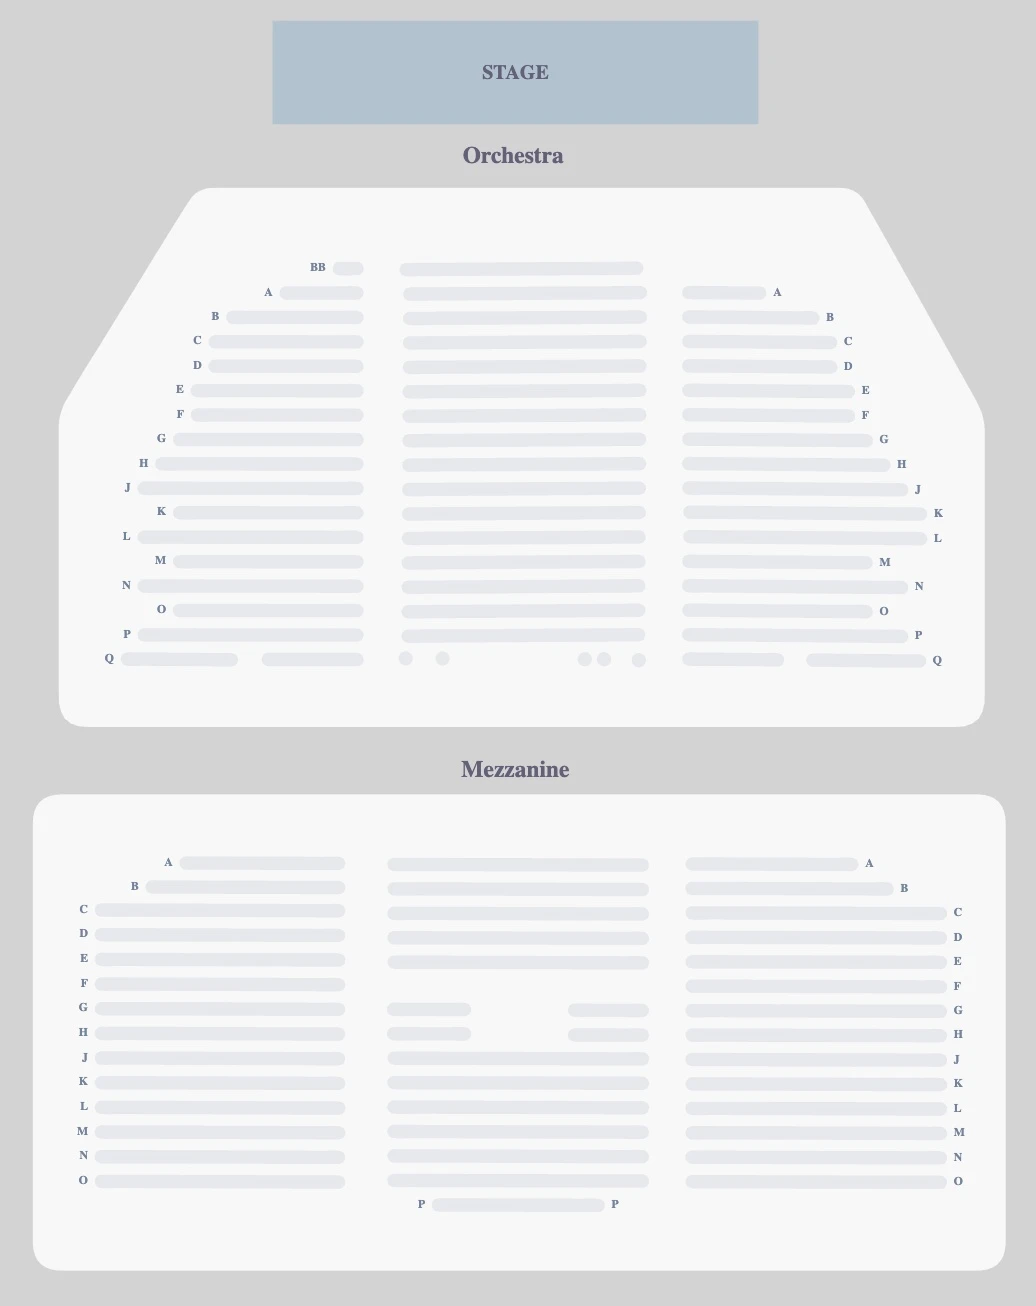 Nederlander Theatre seating plan